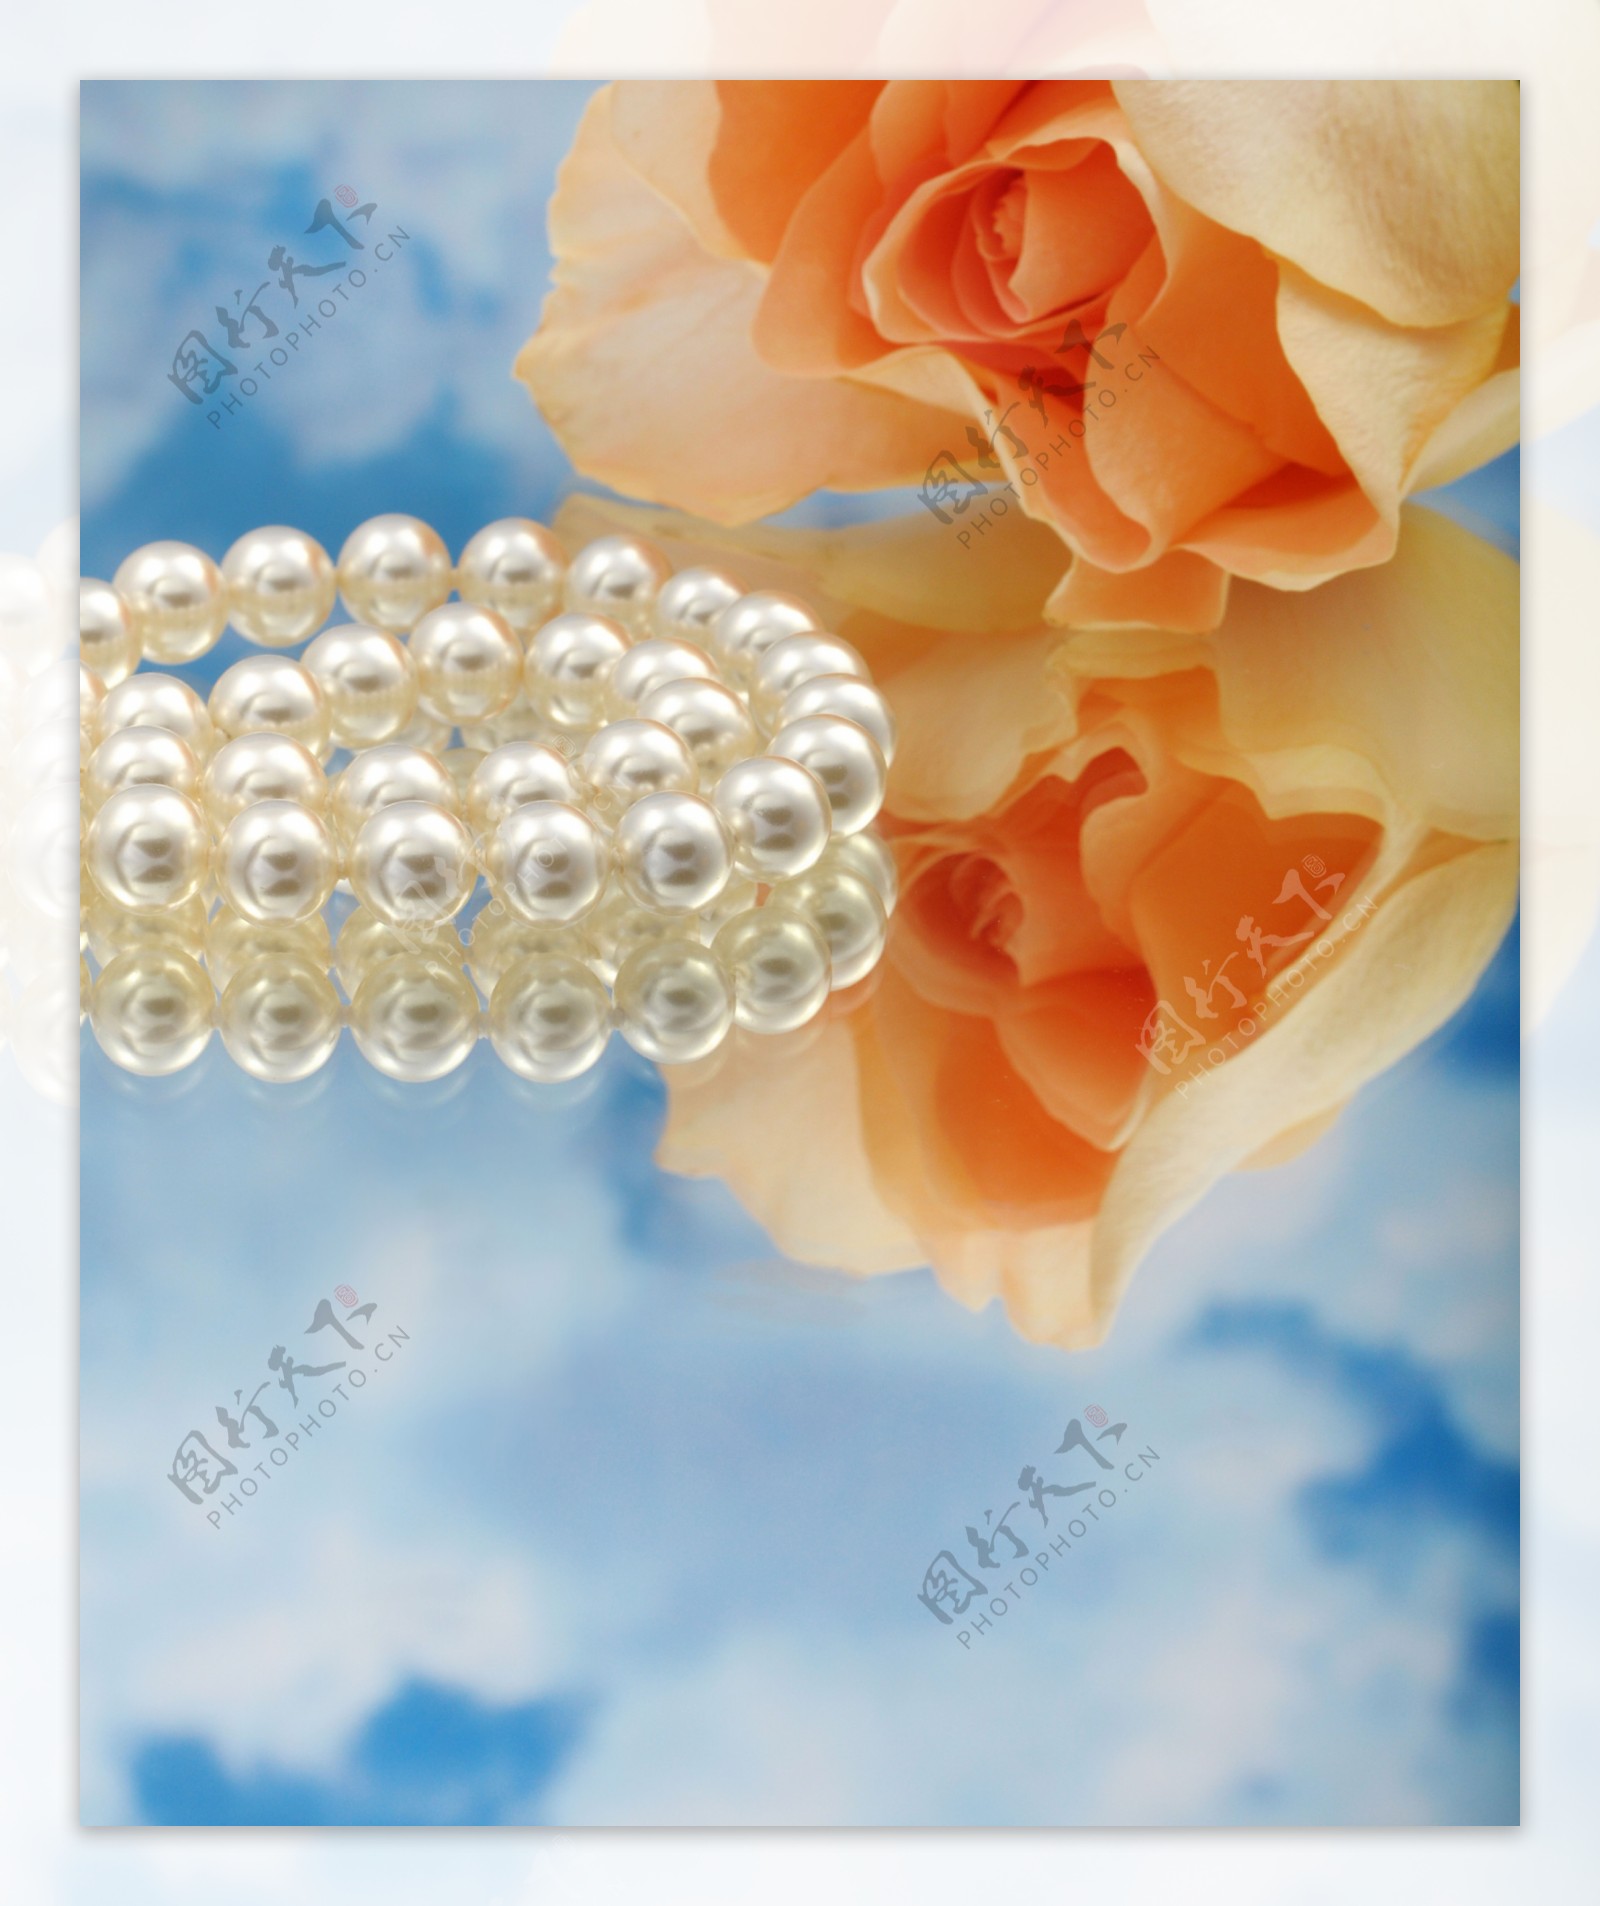 珍珠项链与玫瑰花图片